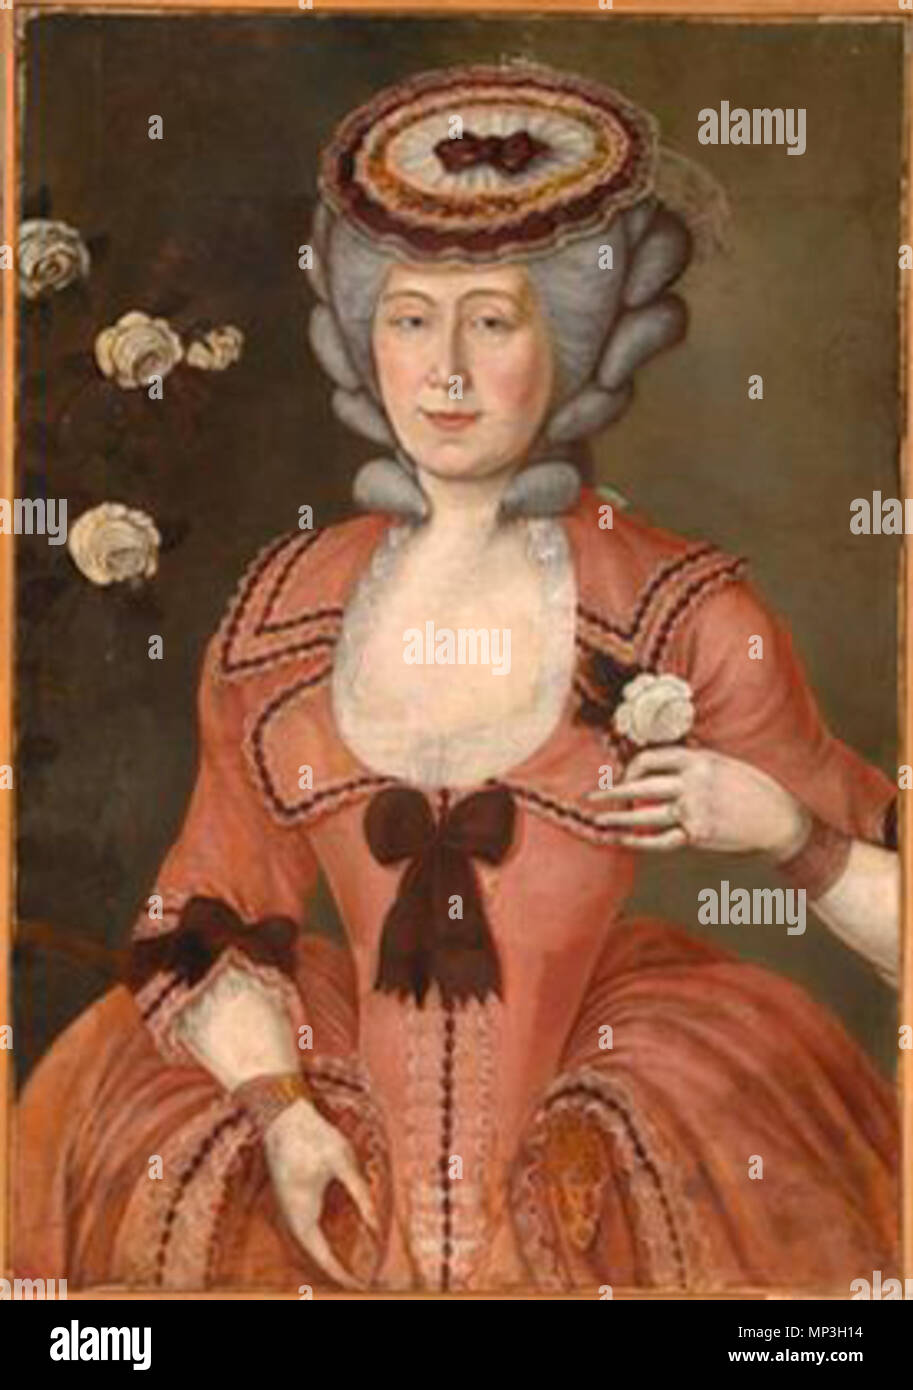 N 8570 009 Slovenščina: Plemkinja v rokokojski obleki second half of 18th  century. 1010 Plemkinja v rokokojski obleki (2. pol. 18. st Stock Photo -  Alamy